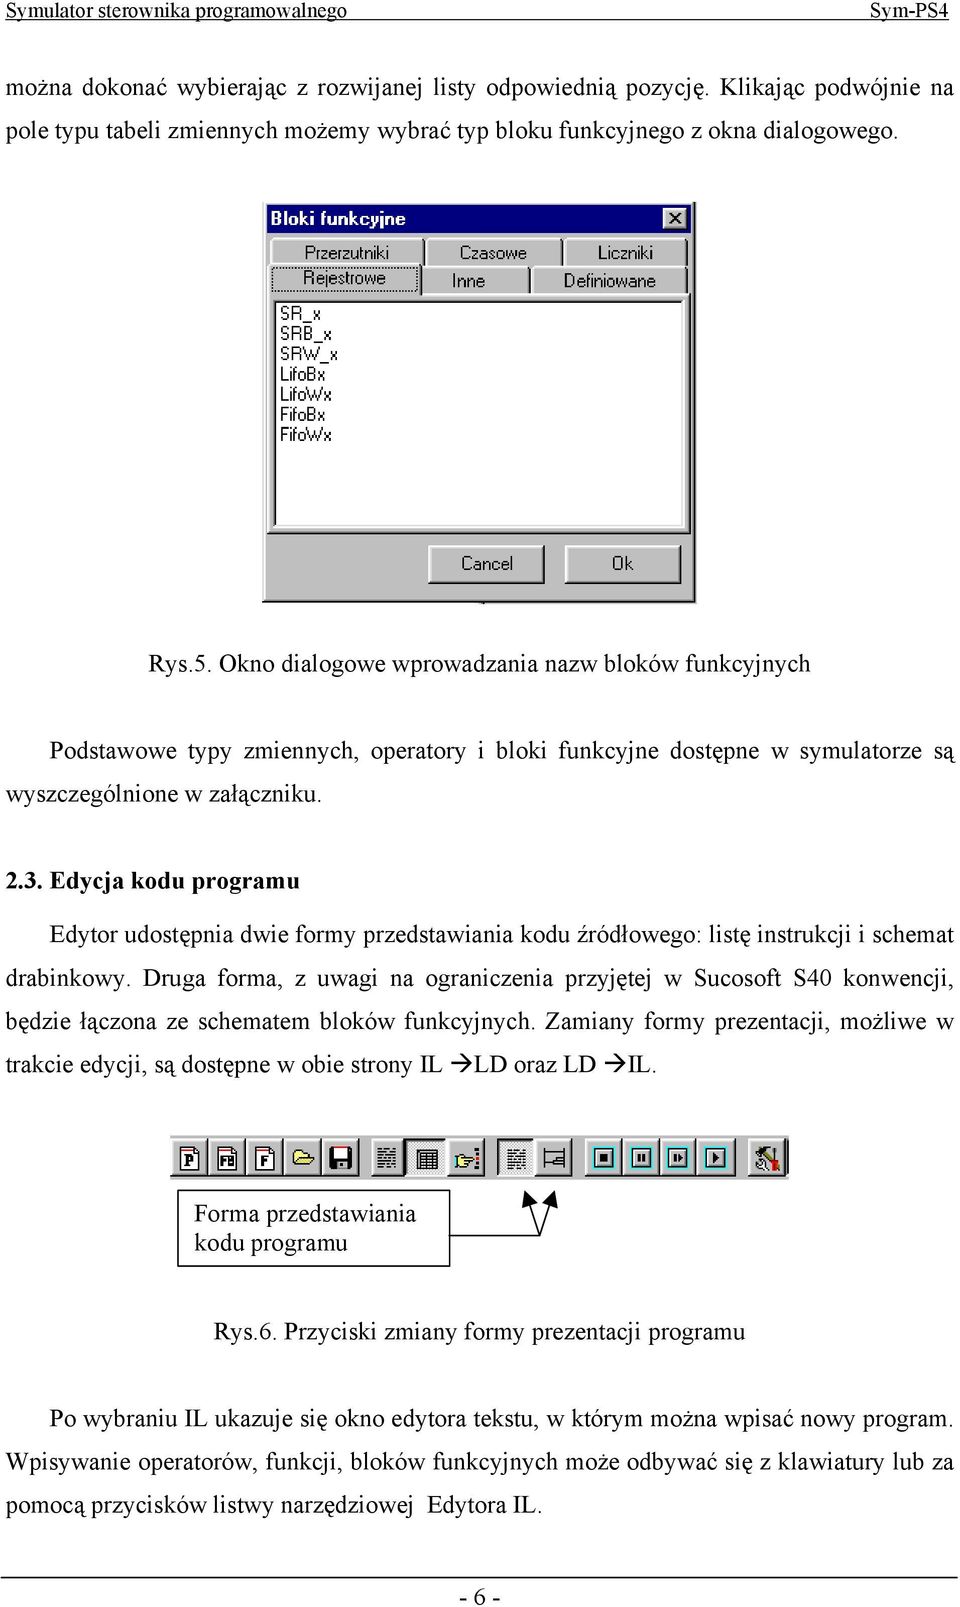 Edycja kodu programu Edytor udostępnia dwie formy przedstawiania kodu źródłowego: listę instrukcji i schemat drabinkowy.